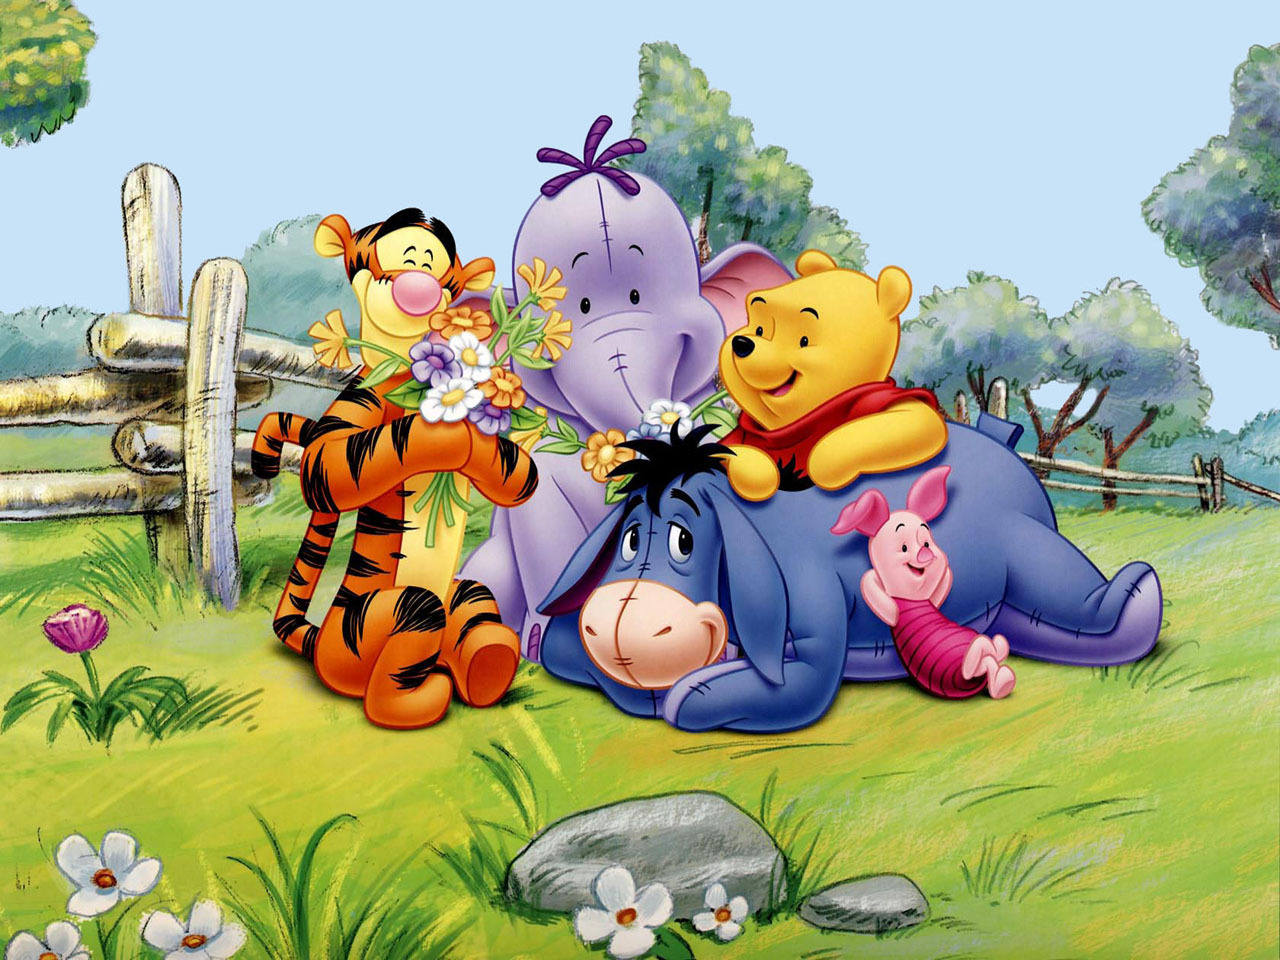 Classic Disney Wallpaper: pooh friends. Winnie the pooh picture, Winnie the pooh cartoon, Winnie the pooh